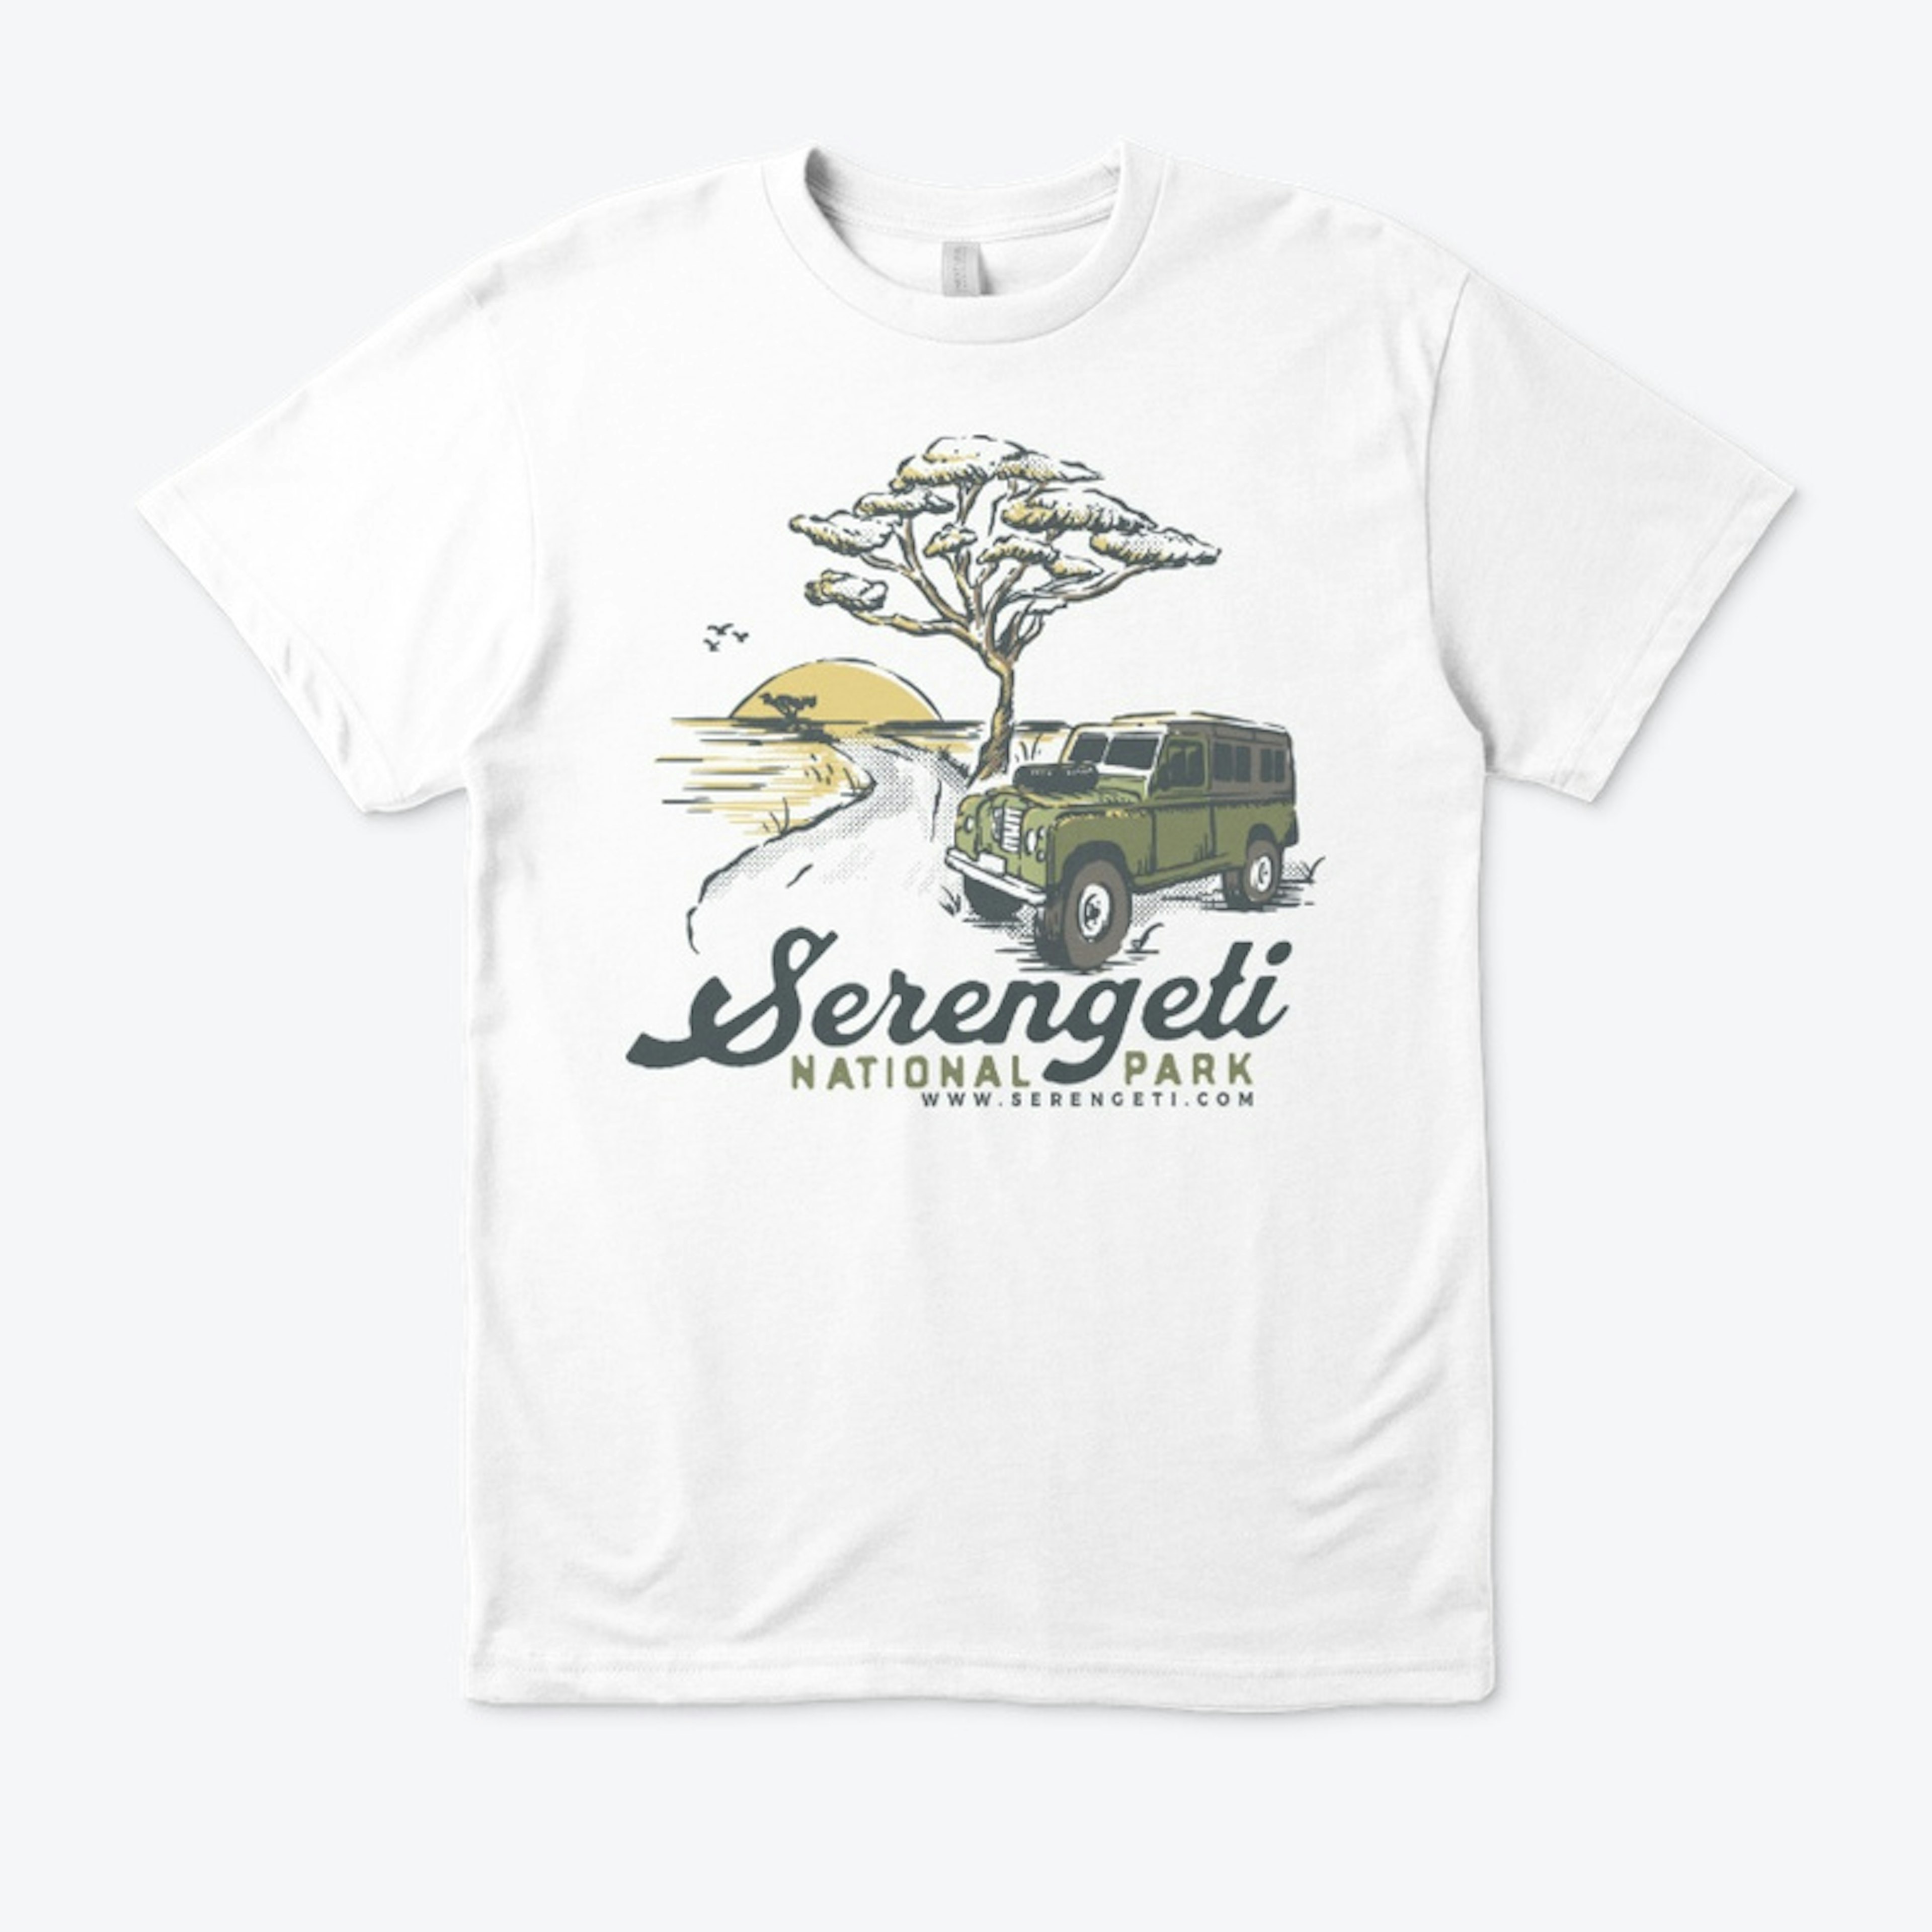 Serengeti vintage safari t-shirt